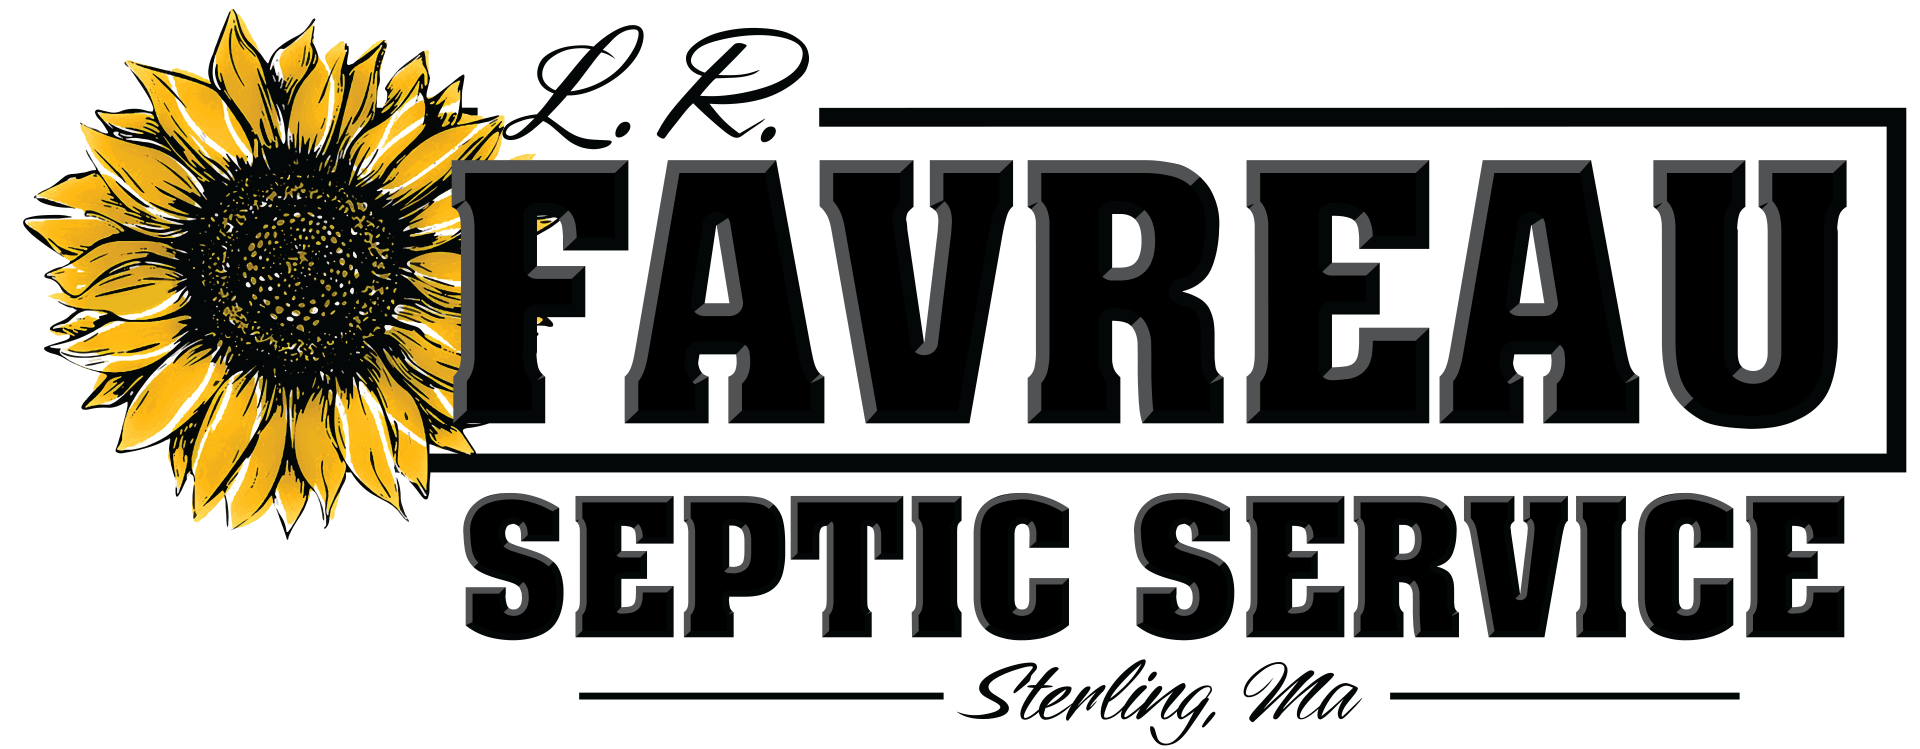 L R Favreau Septic Service